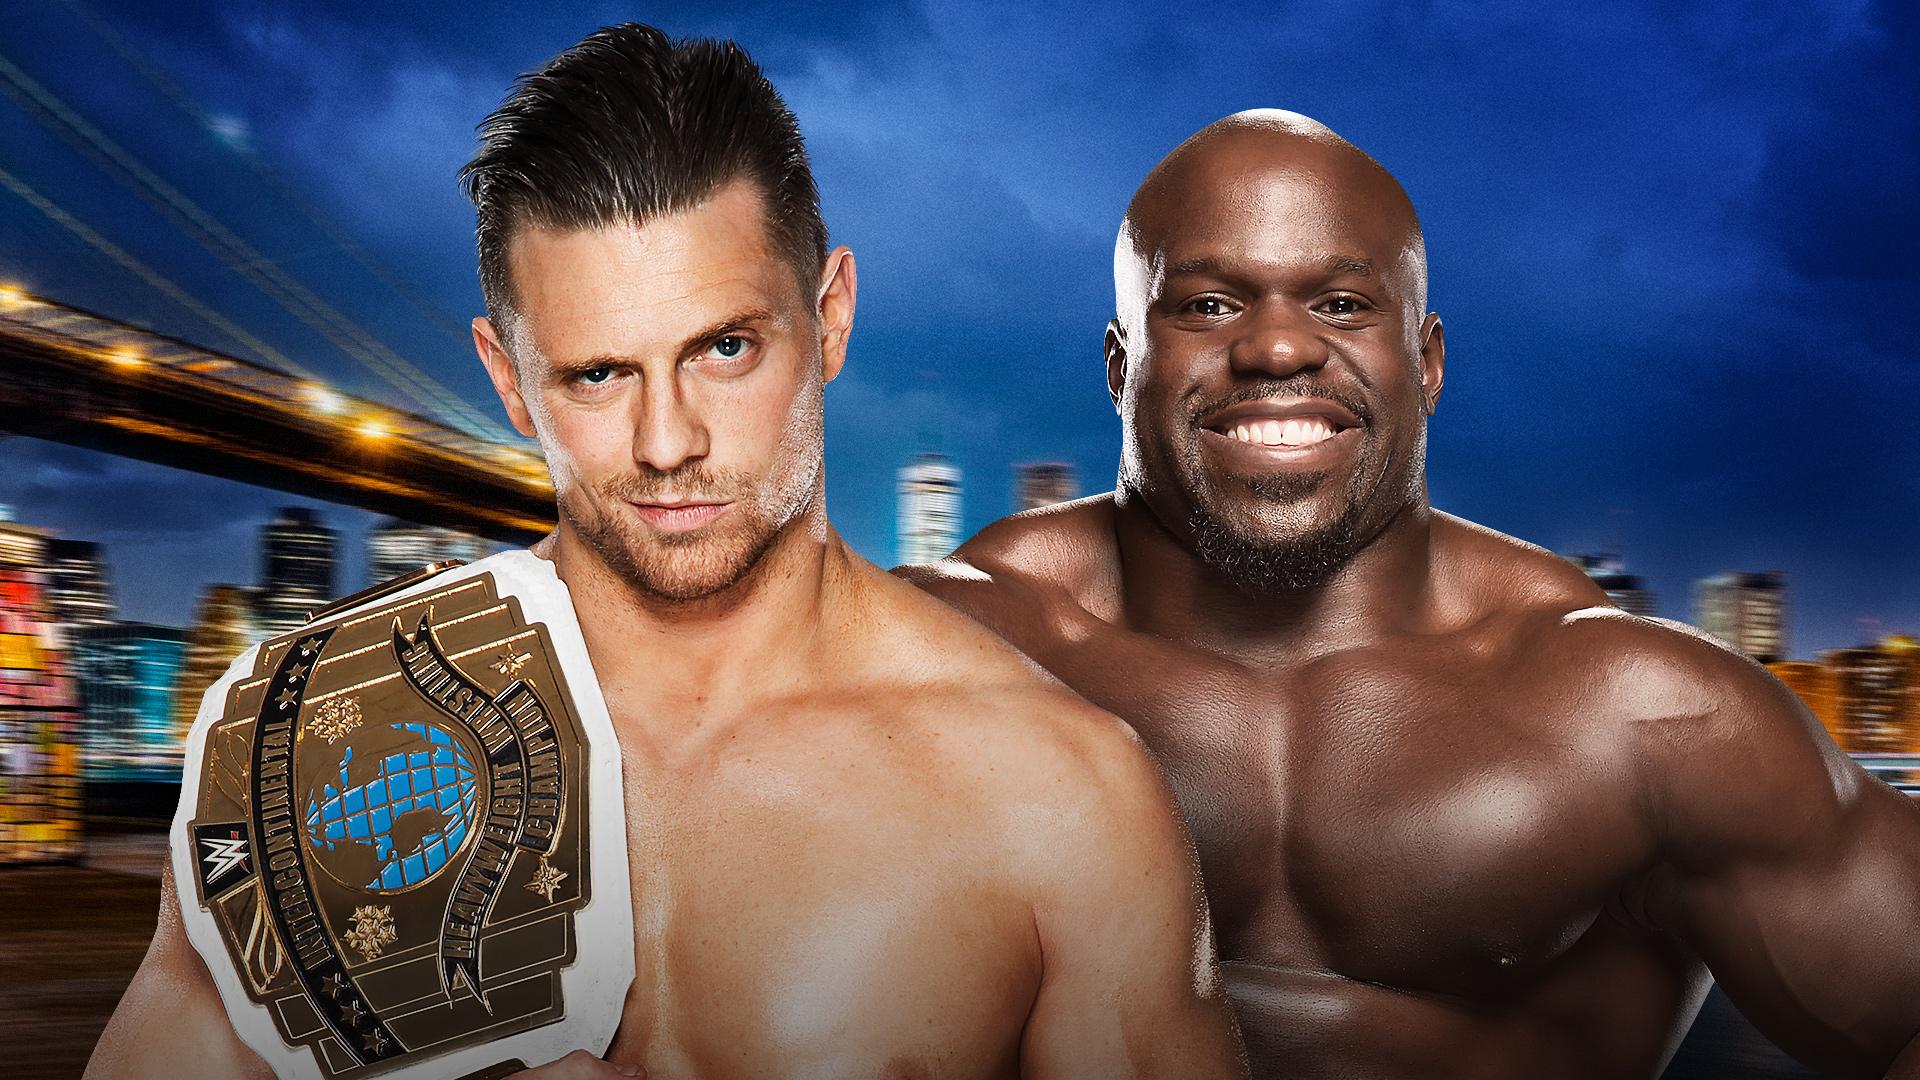 WWE Announces The Miz vs. Apollo Crews at SummerSlam